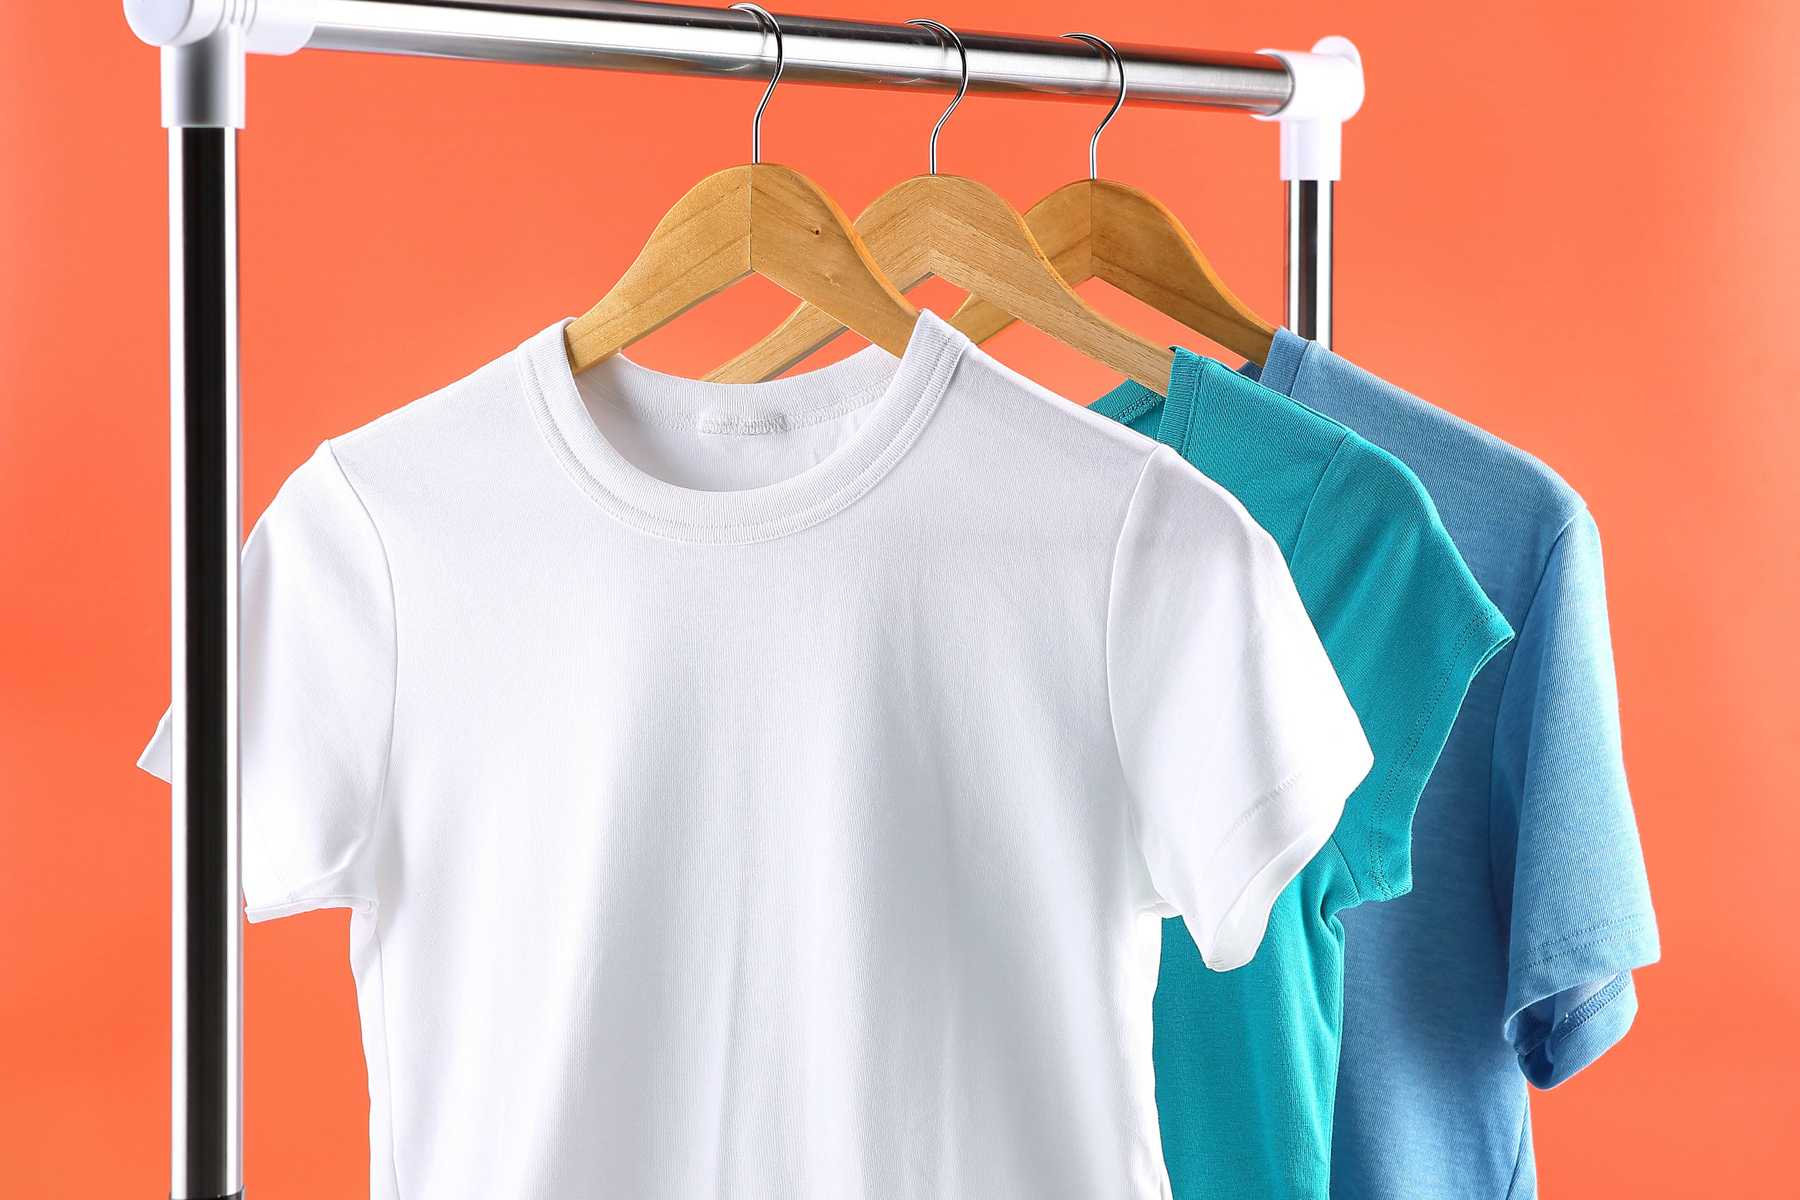 Cách làm quần áo khô nhanh trong 5 phút có thể bạn chưa biết